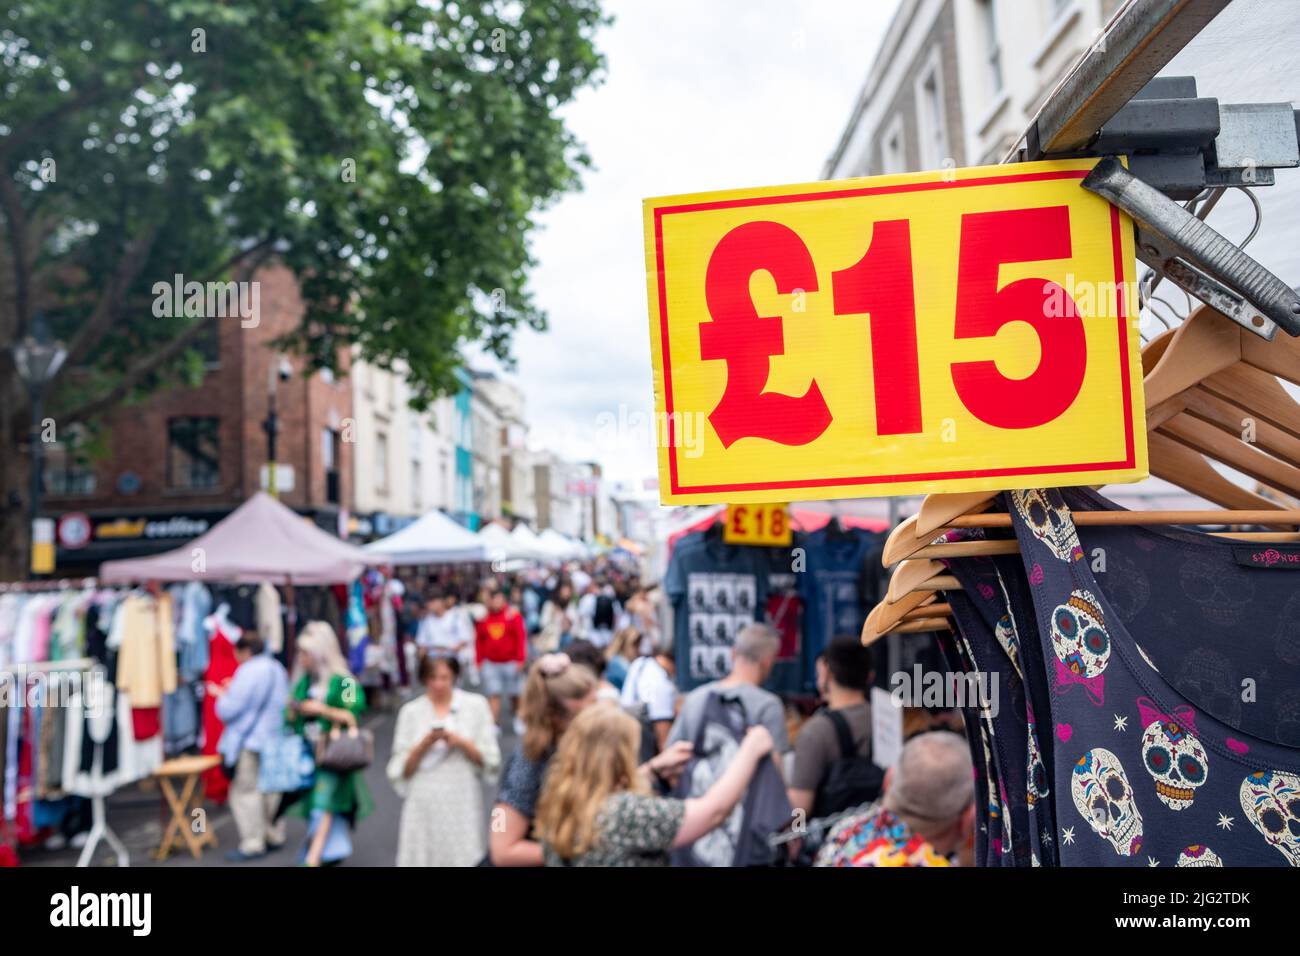 Portobello Market in Notting Hill, West London. Ein Wahrzeichen Straßenmarkt, der für seine Antiquitäten berühmt ist. Stockfoto